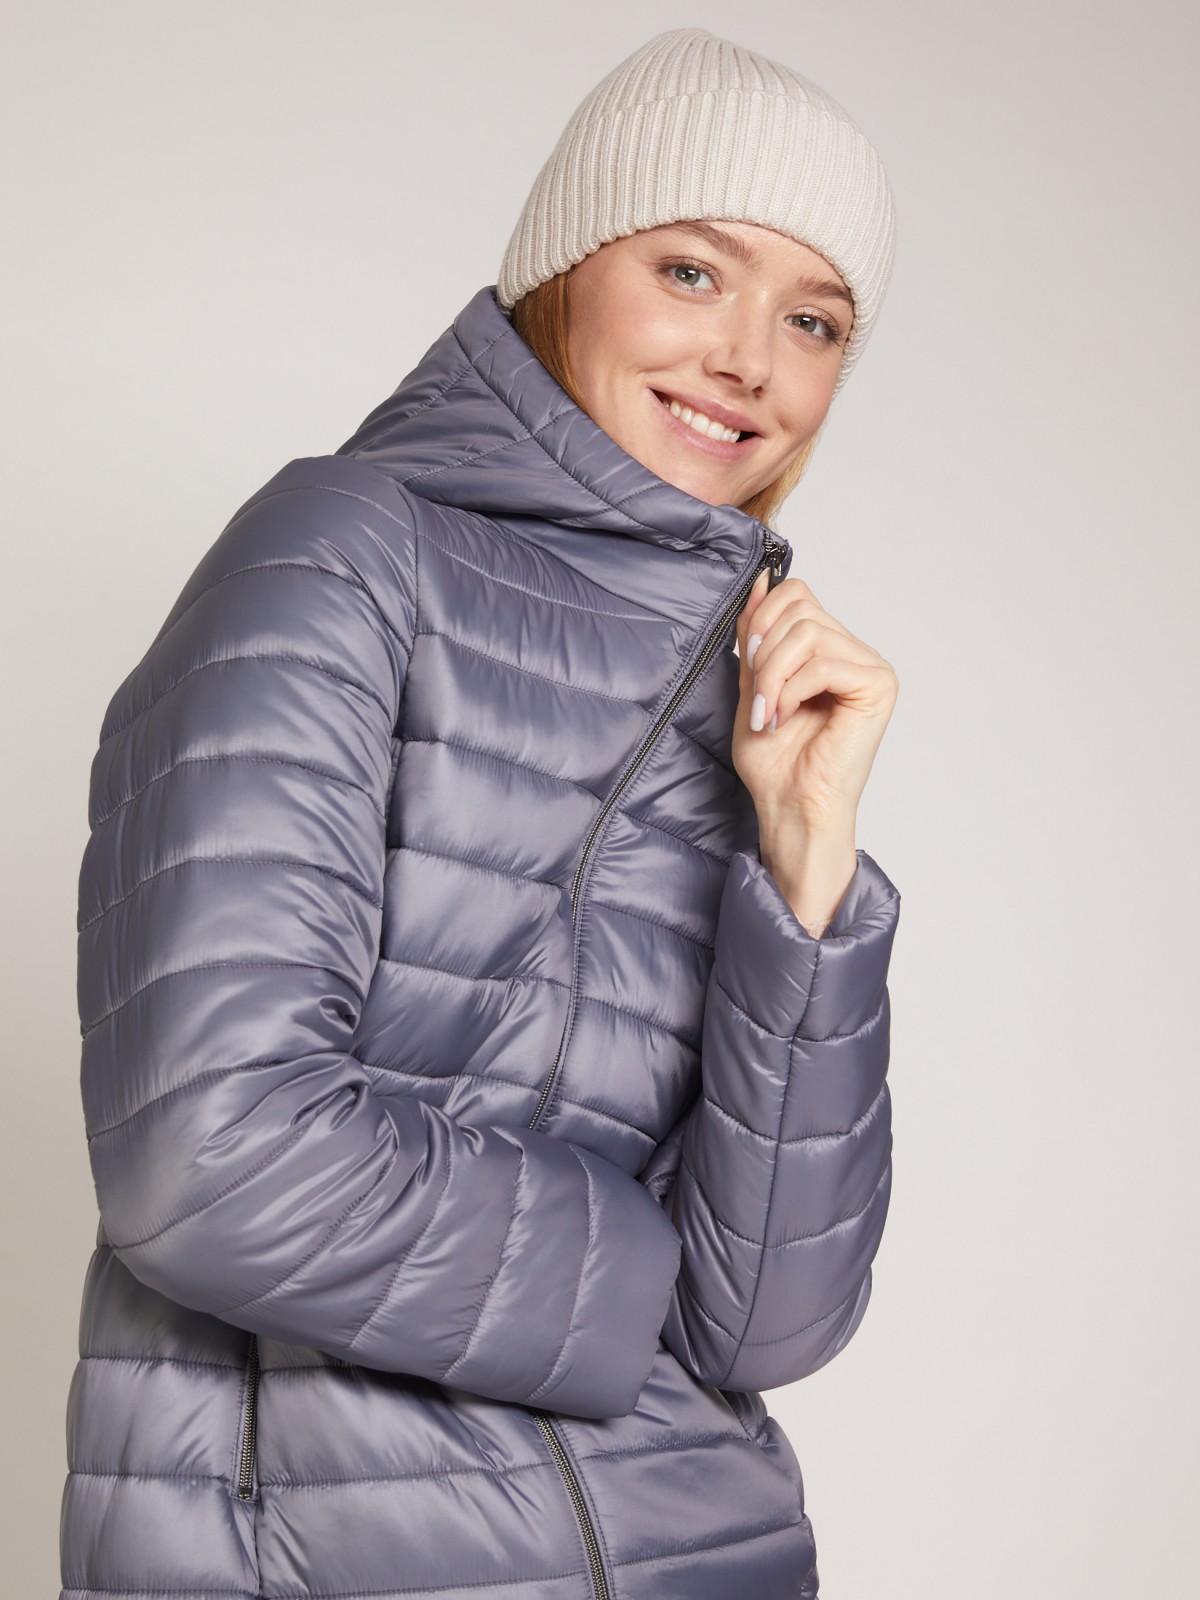 Утеплённое пальто прямого силуэта с капюшоном zolla 021335212024, цвет темно-серый, размер XS - фото 4